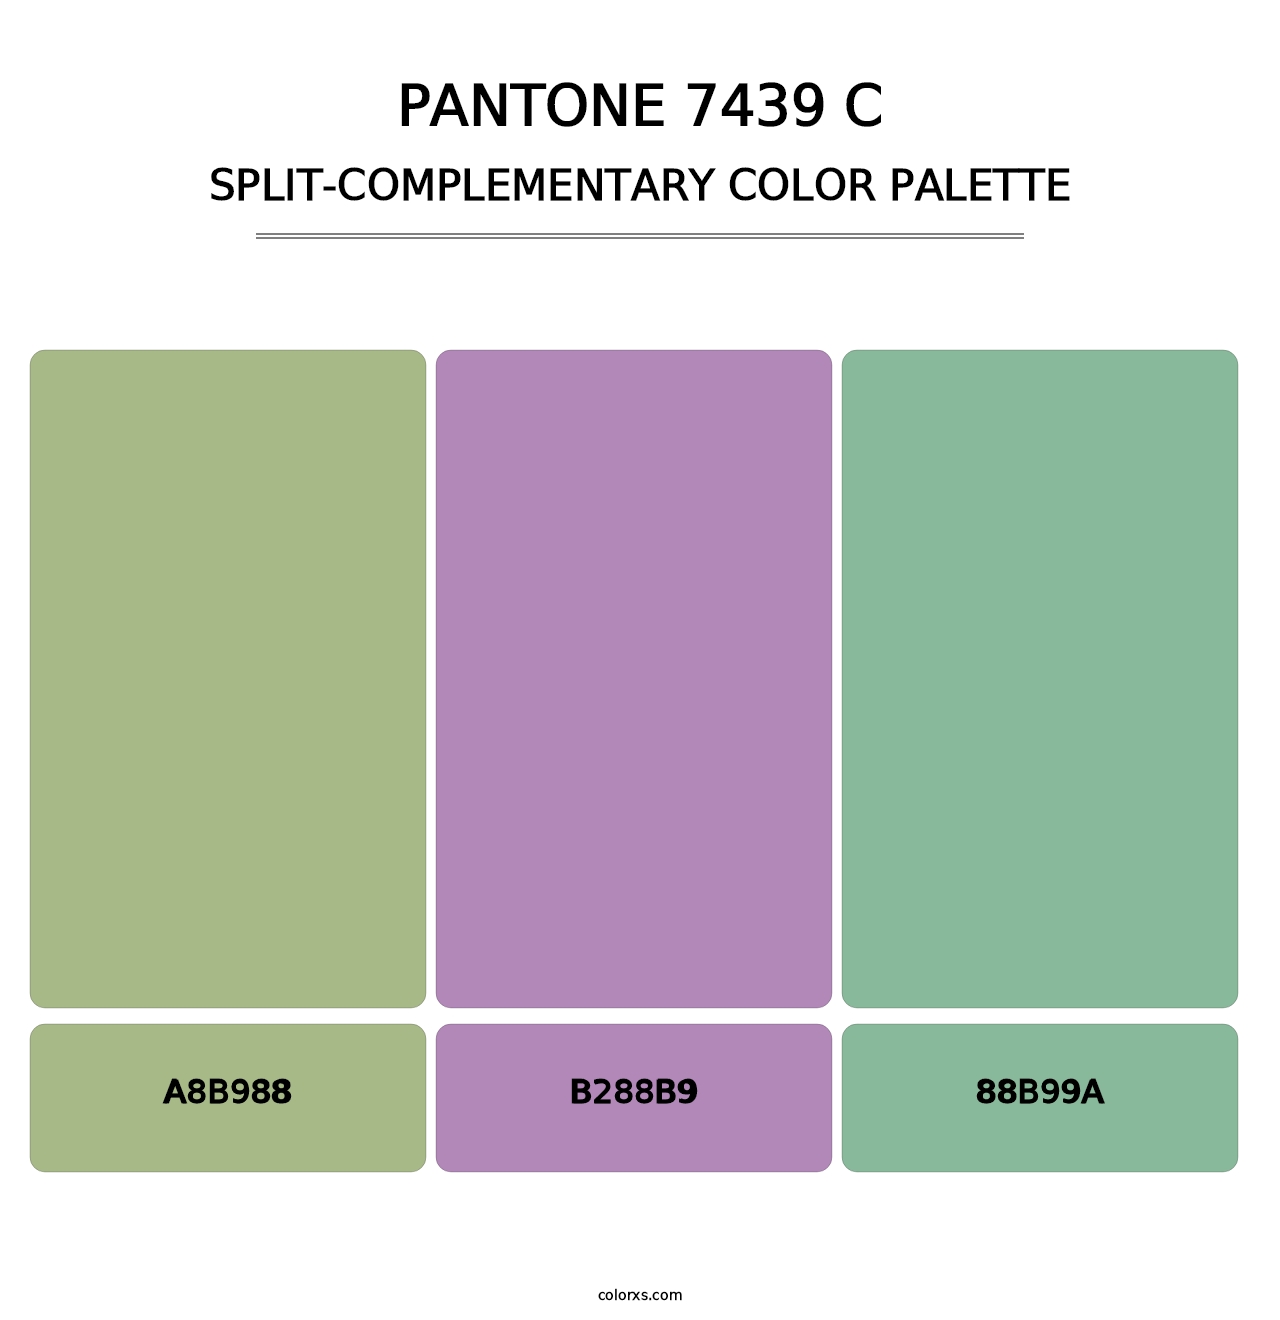 PANTONE 7439 C - Split-Complementary Color Palette